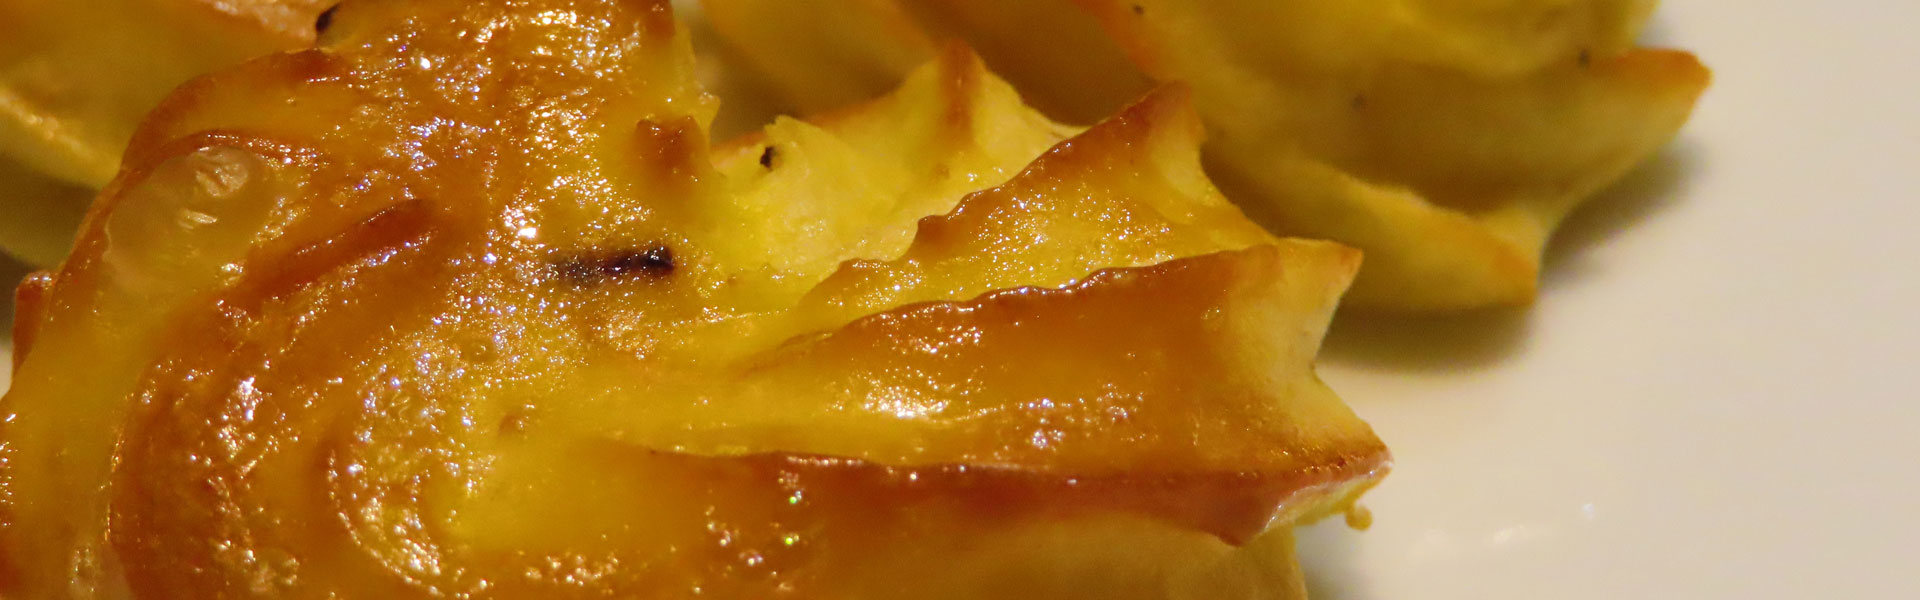 Van Pomme Duchesse wordt vaak de ingevroren variant gekocht. Toch is het heel eenvoudig om zelf te maken en lekkerder.